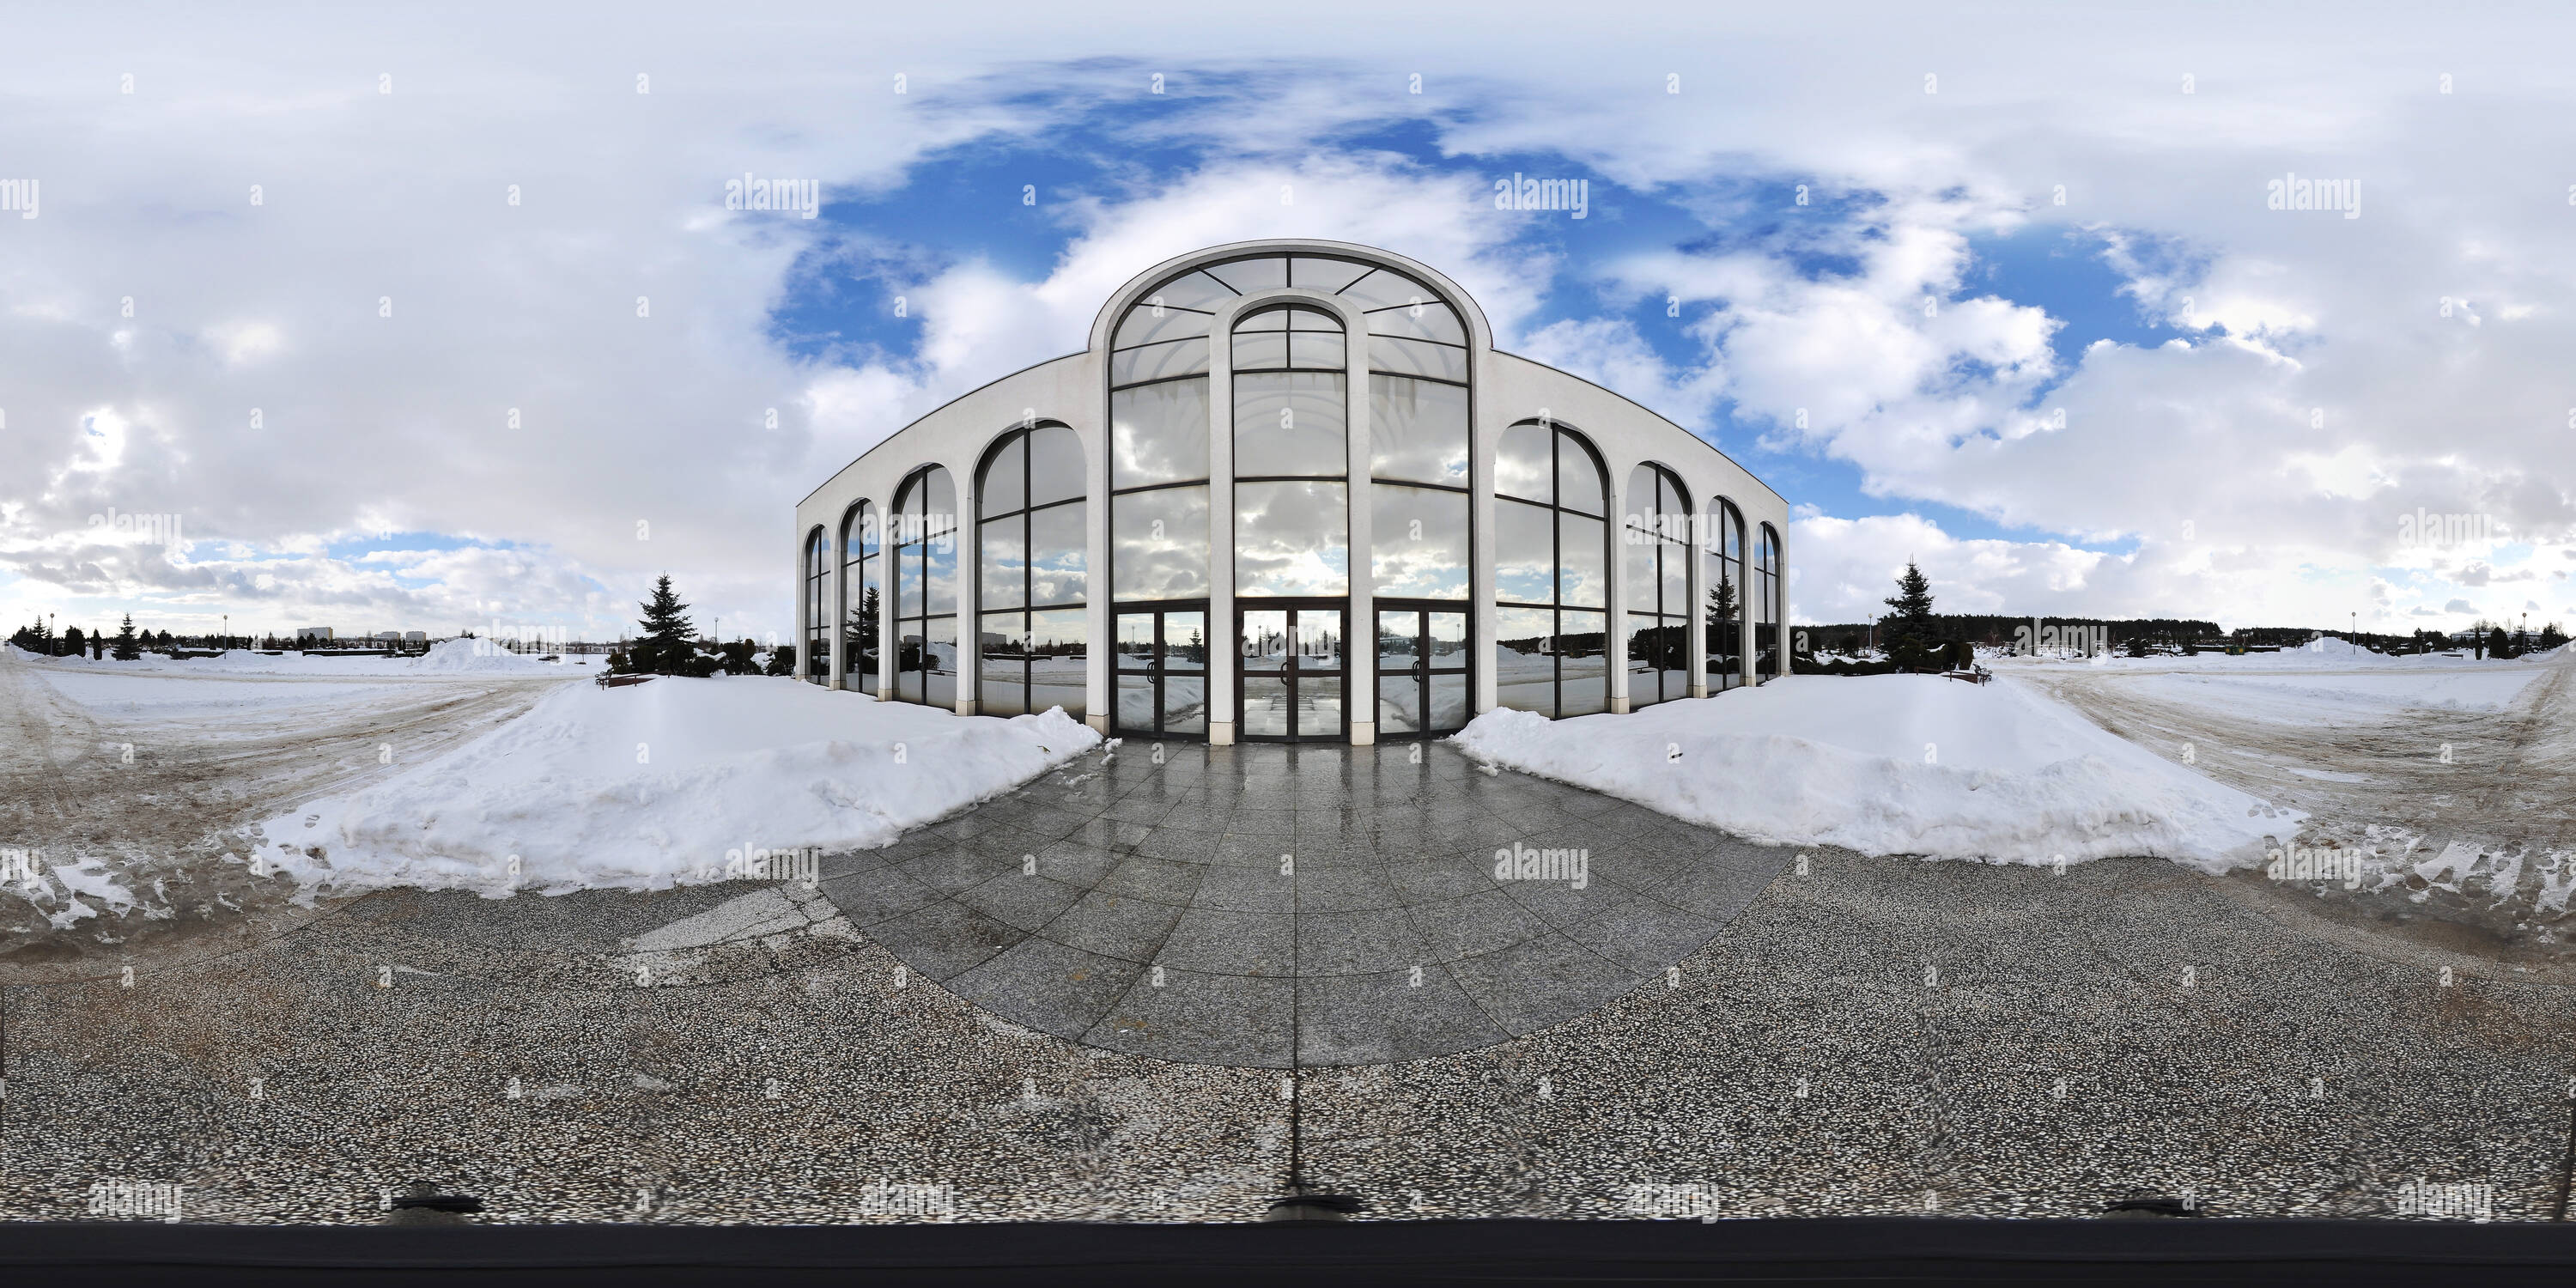 360-view-of-kaplica-kielczow-wroclaw-alamy